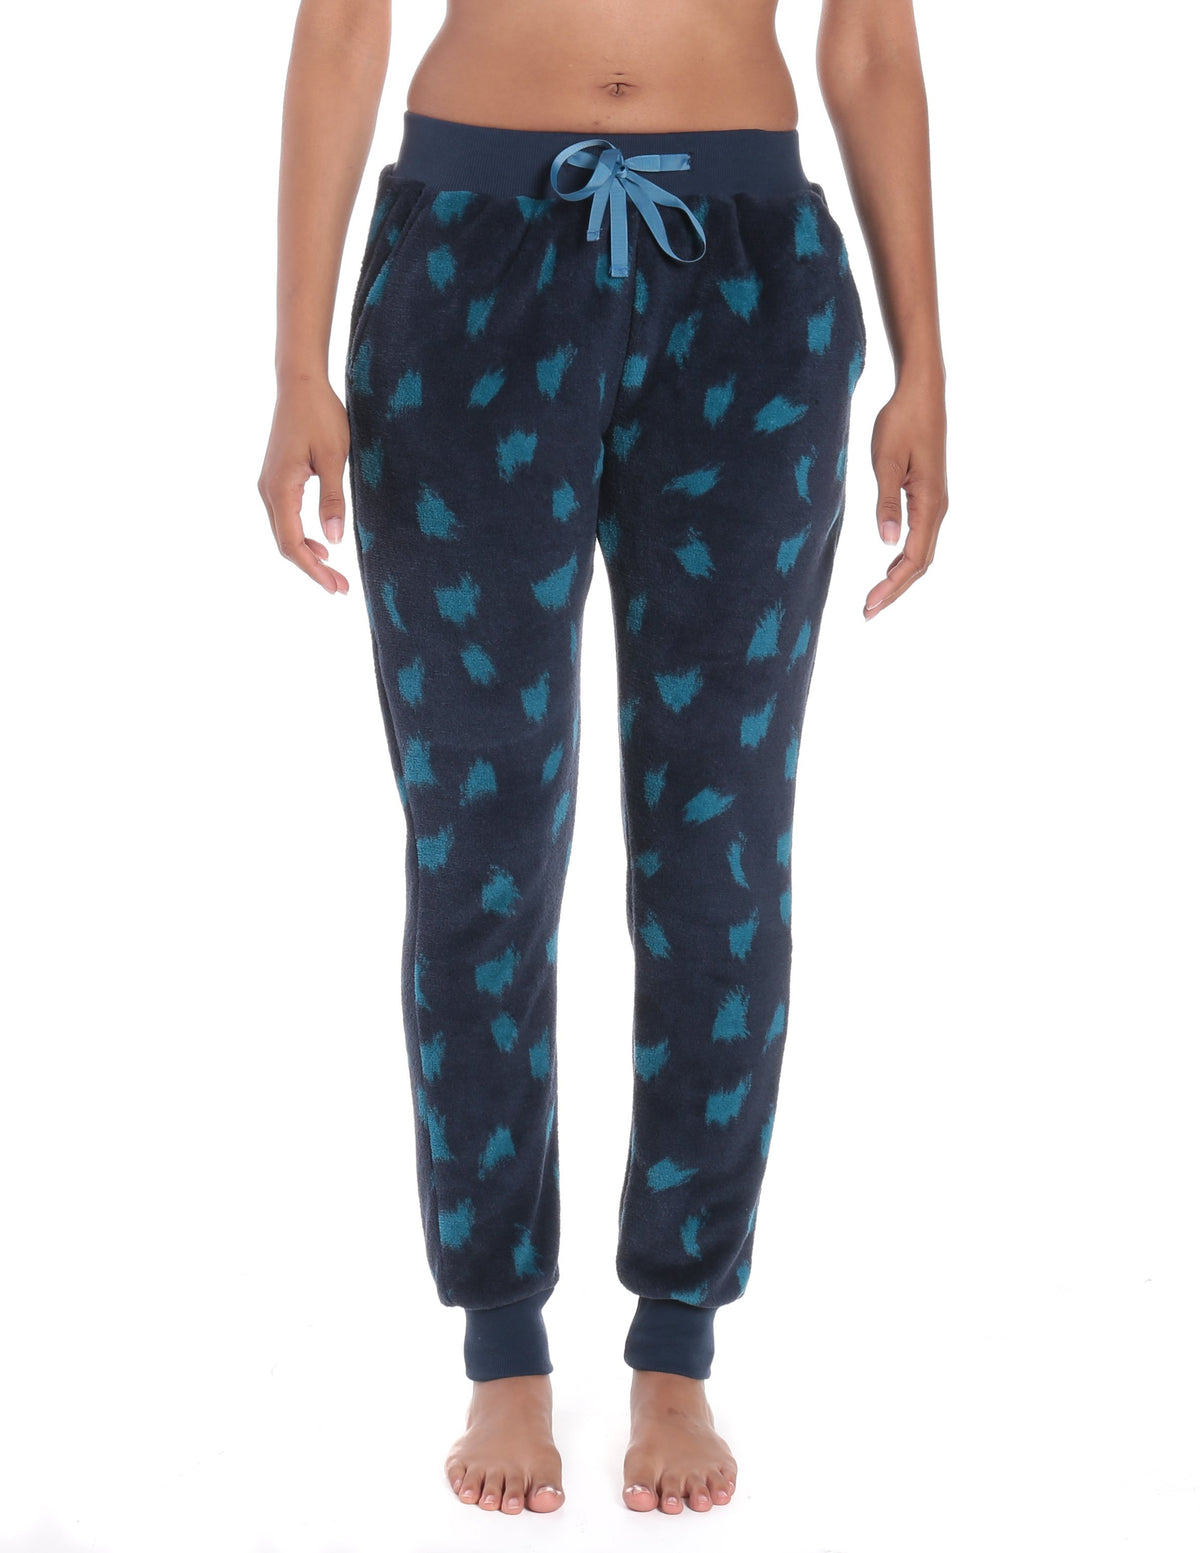 Women's Premium Coral Fleece Plush Jogger Lounge Pants - Snow Leopard - Navy/Teal